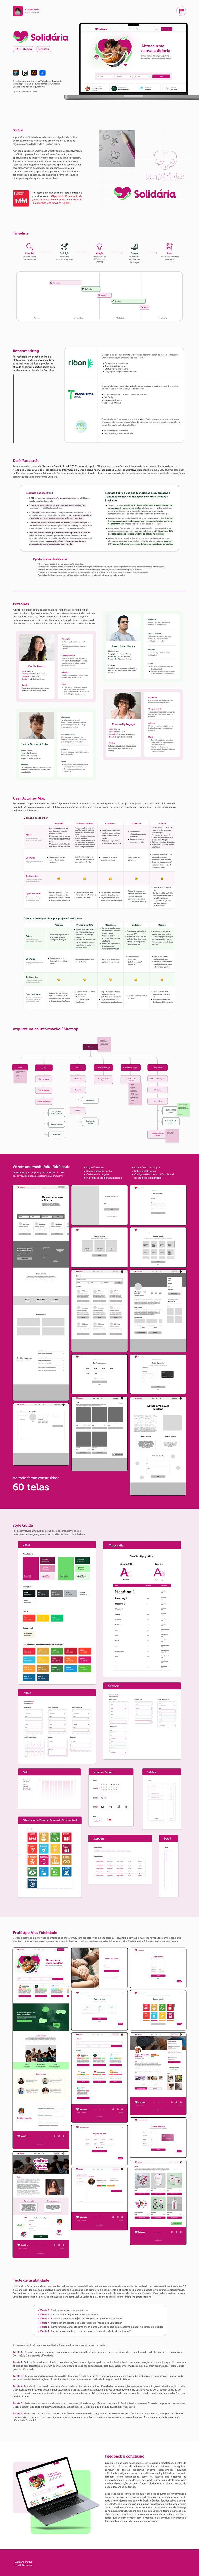 user interface user experience ux/ui Figma Web Design  ui design desktop app Case Study UX design Website